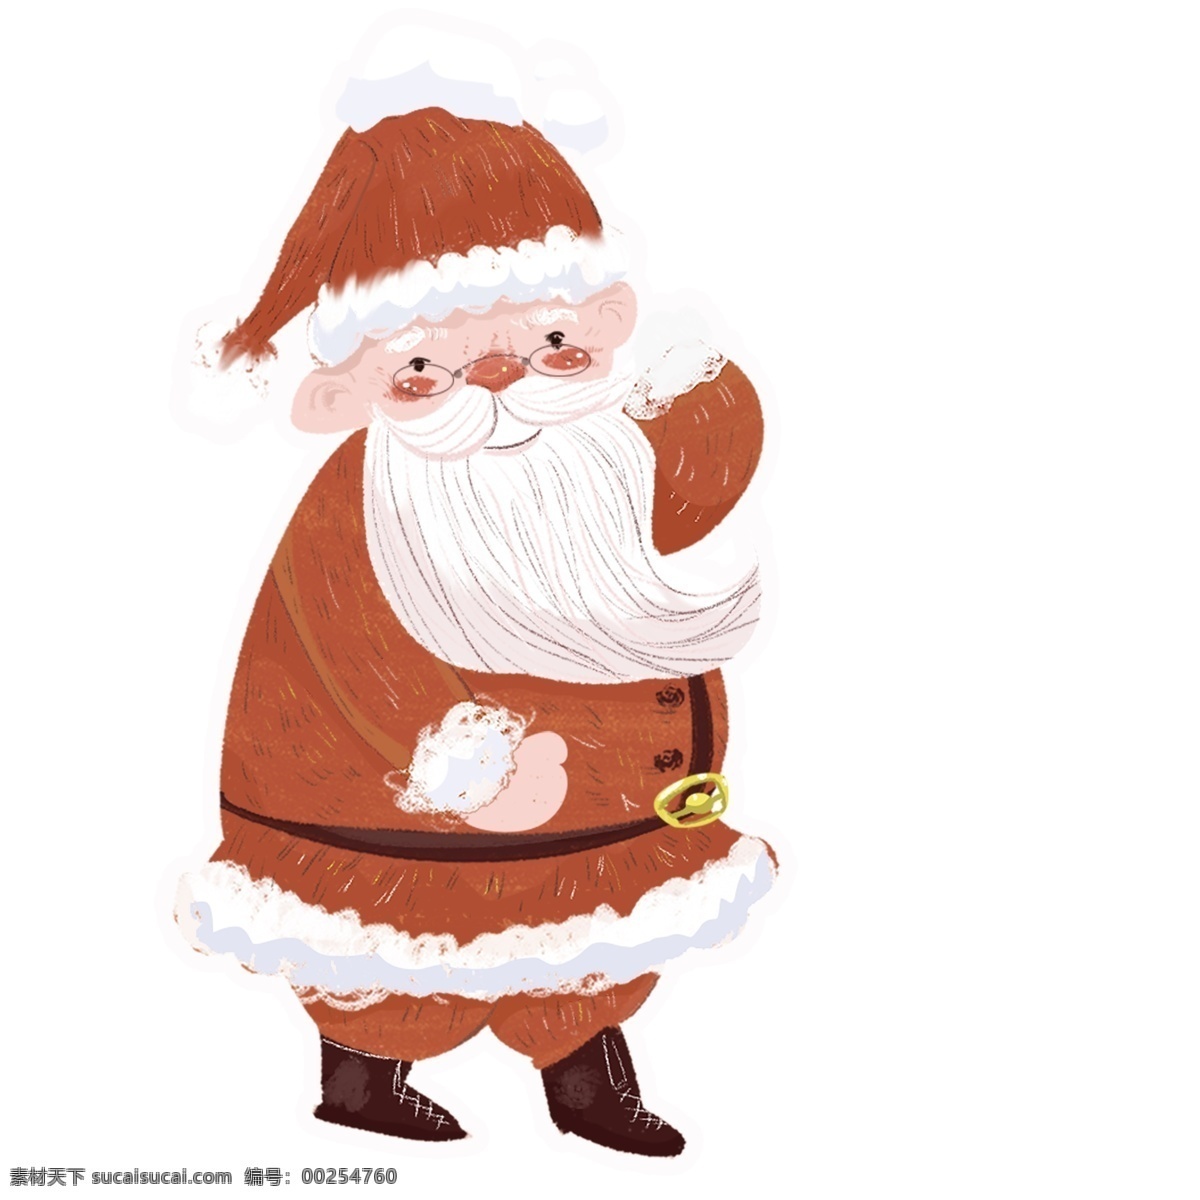 复古 可爱 圣诞 老爷爷 手绘 卡通 圣诞老人 圣诞老公公 插画设计 圣诞节 人物素材